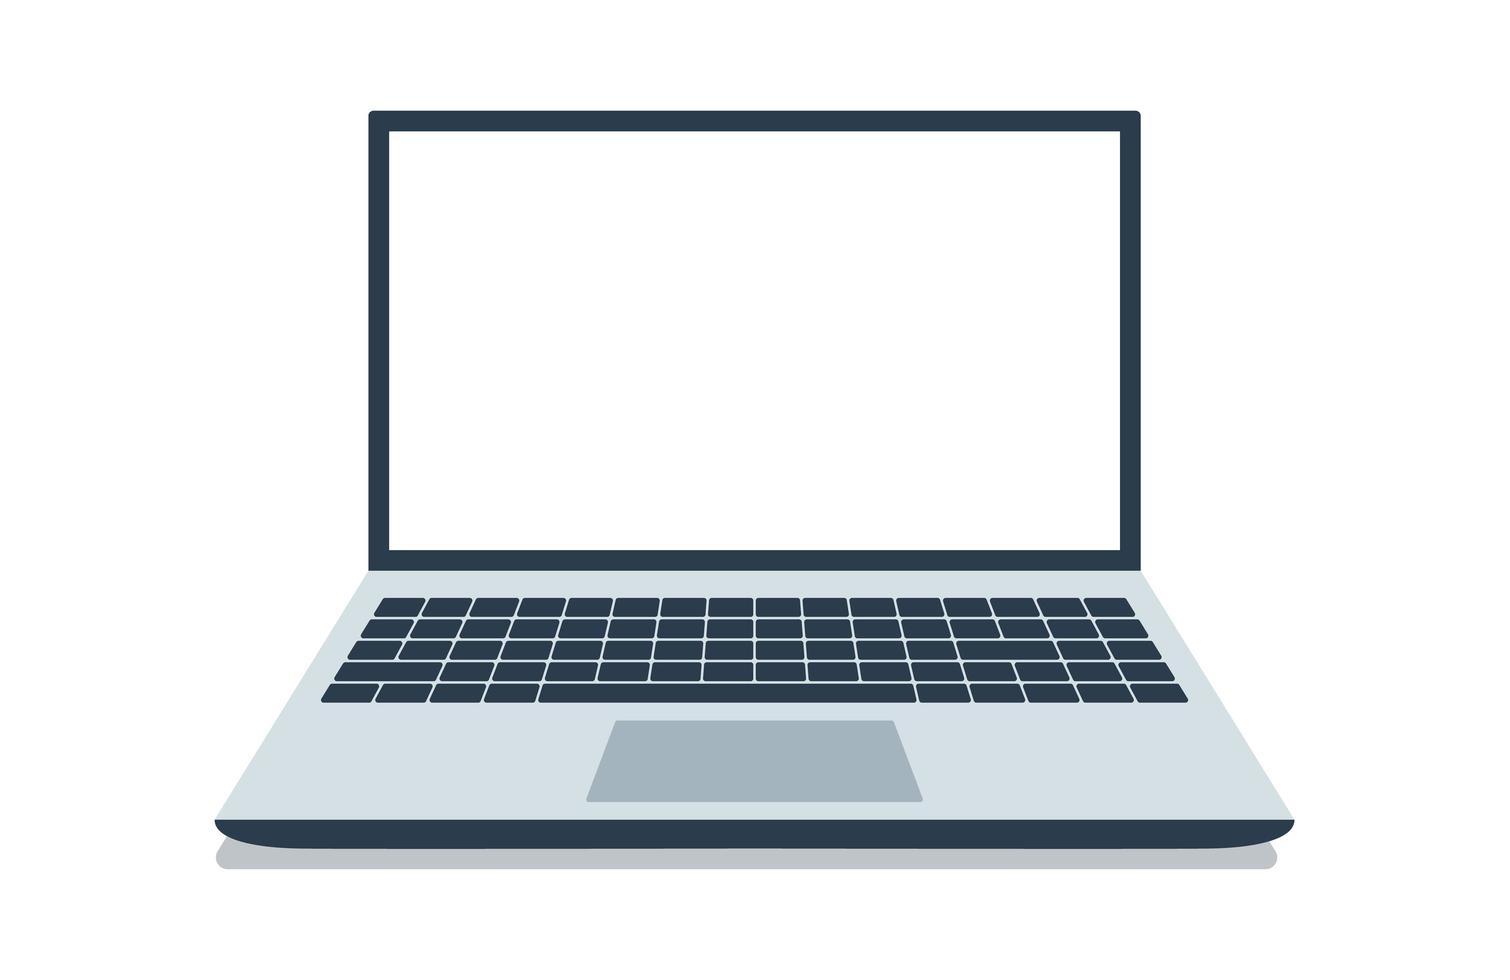 öppen bärbar dator med vit skärm. bärbar datorlayout i platt stil isolerad på vit bakgrund, enhetsskärmlayout. vektor illustration